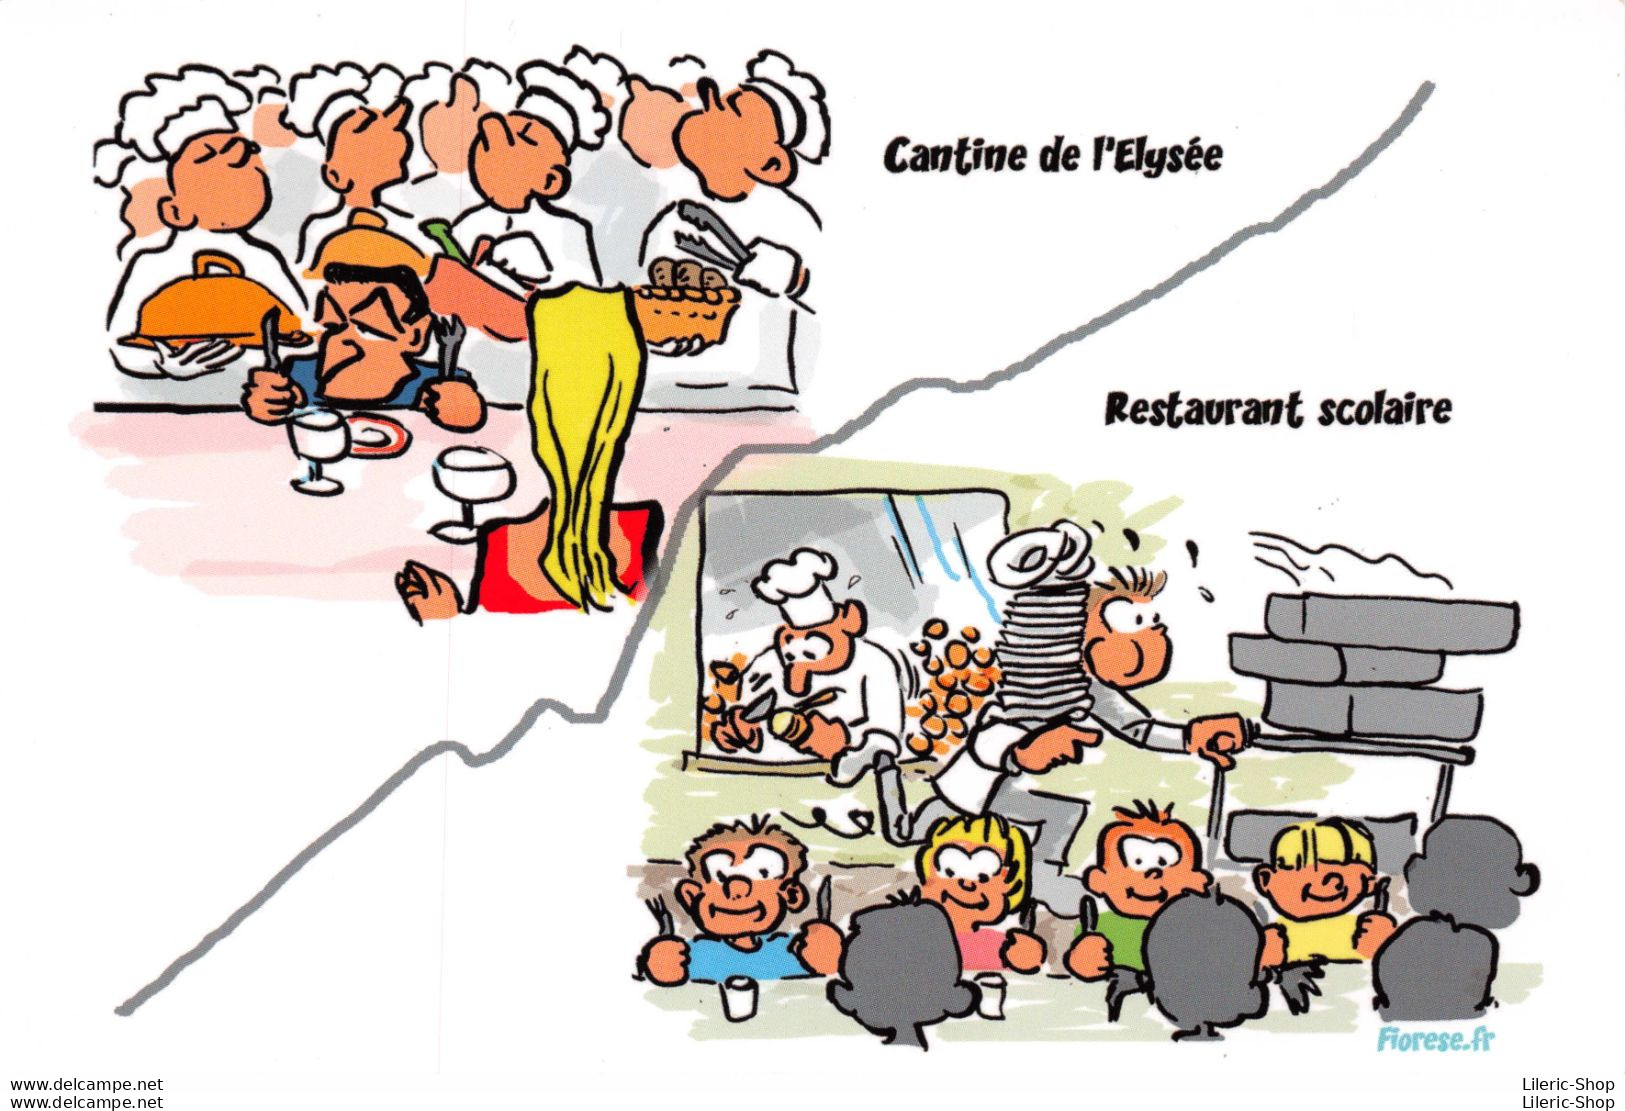 CFDT Pétition Pour Le Soutien Au Service Public Cantine Elysée Et Restaurant Scolaire - Illustrateur Laurent FIOREZE ♥♥♥ - Syndicats